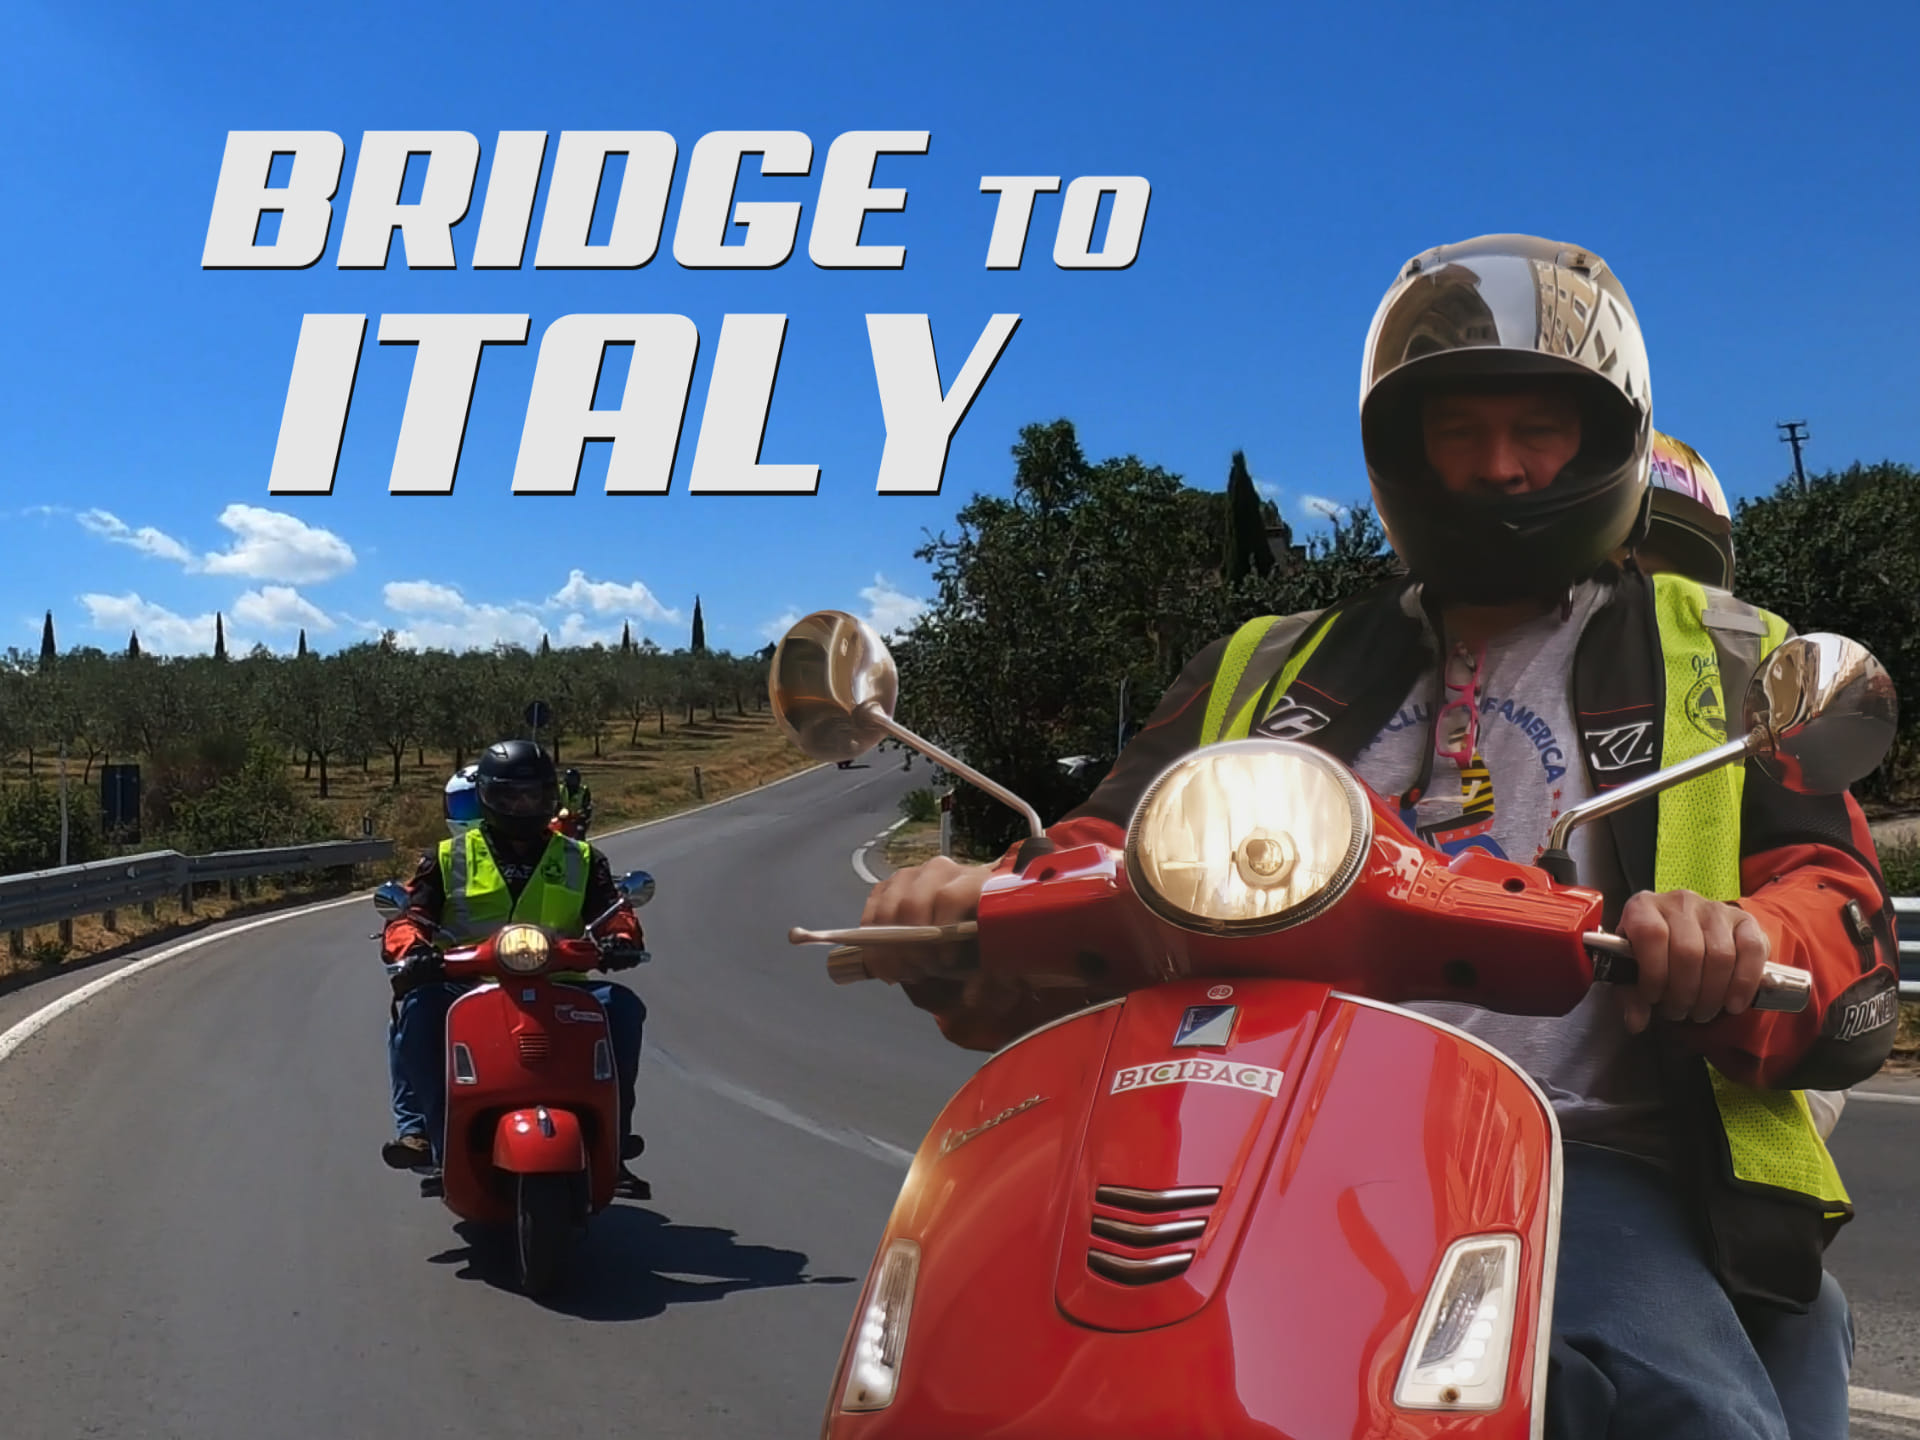 Bridge to Italy